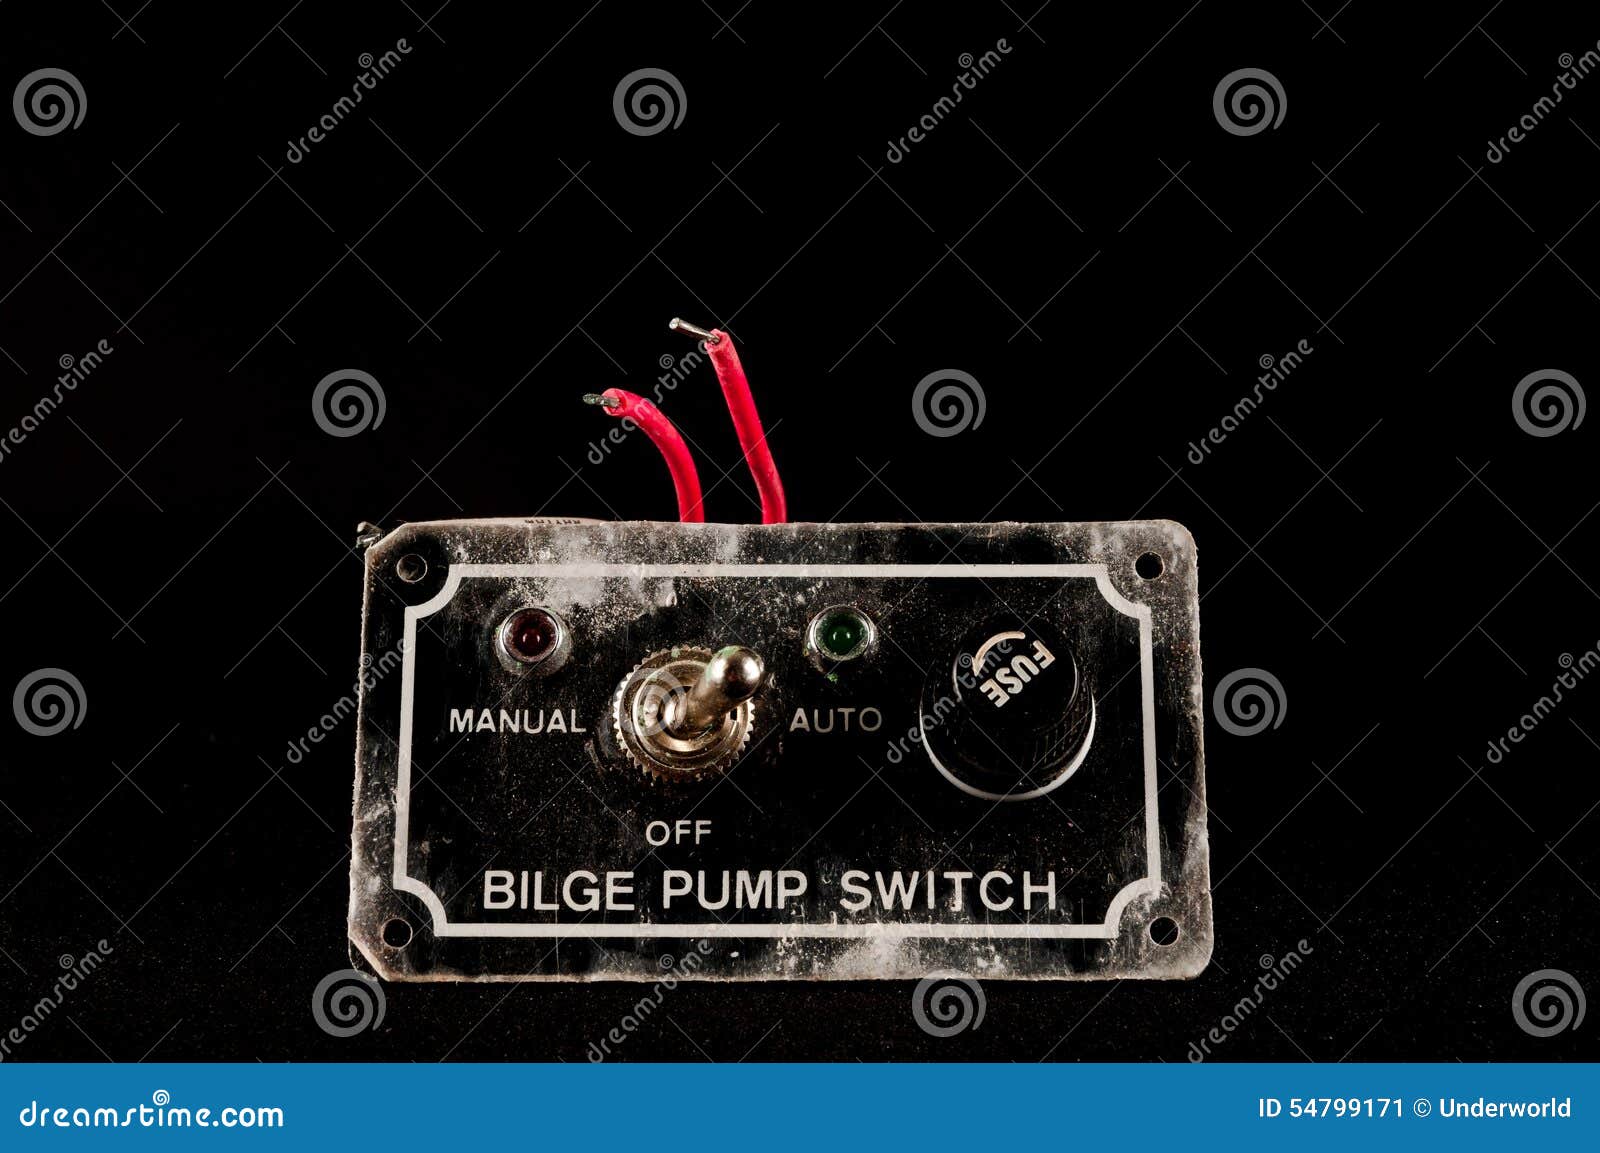 grunge switch interruptor